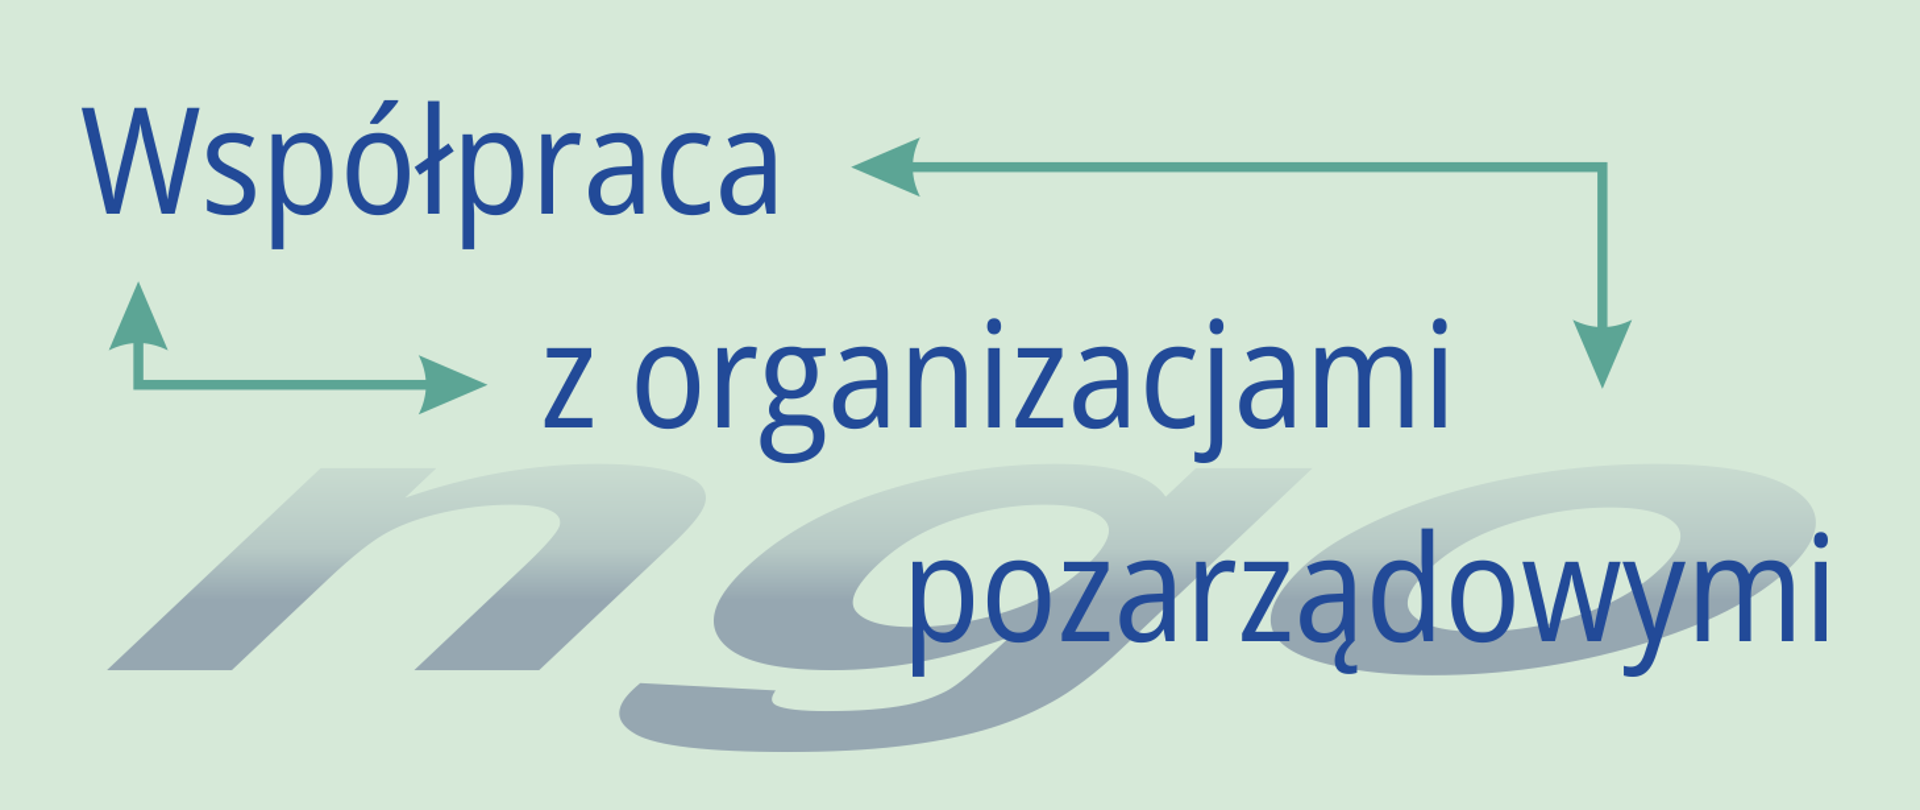 Grafika z tekstem „Współpraca z organizacjami pozarządowymi”; „ngo” – skrót od non-governmental organization. 